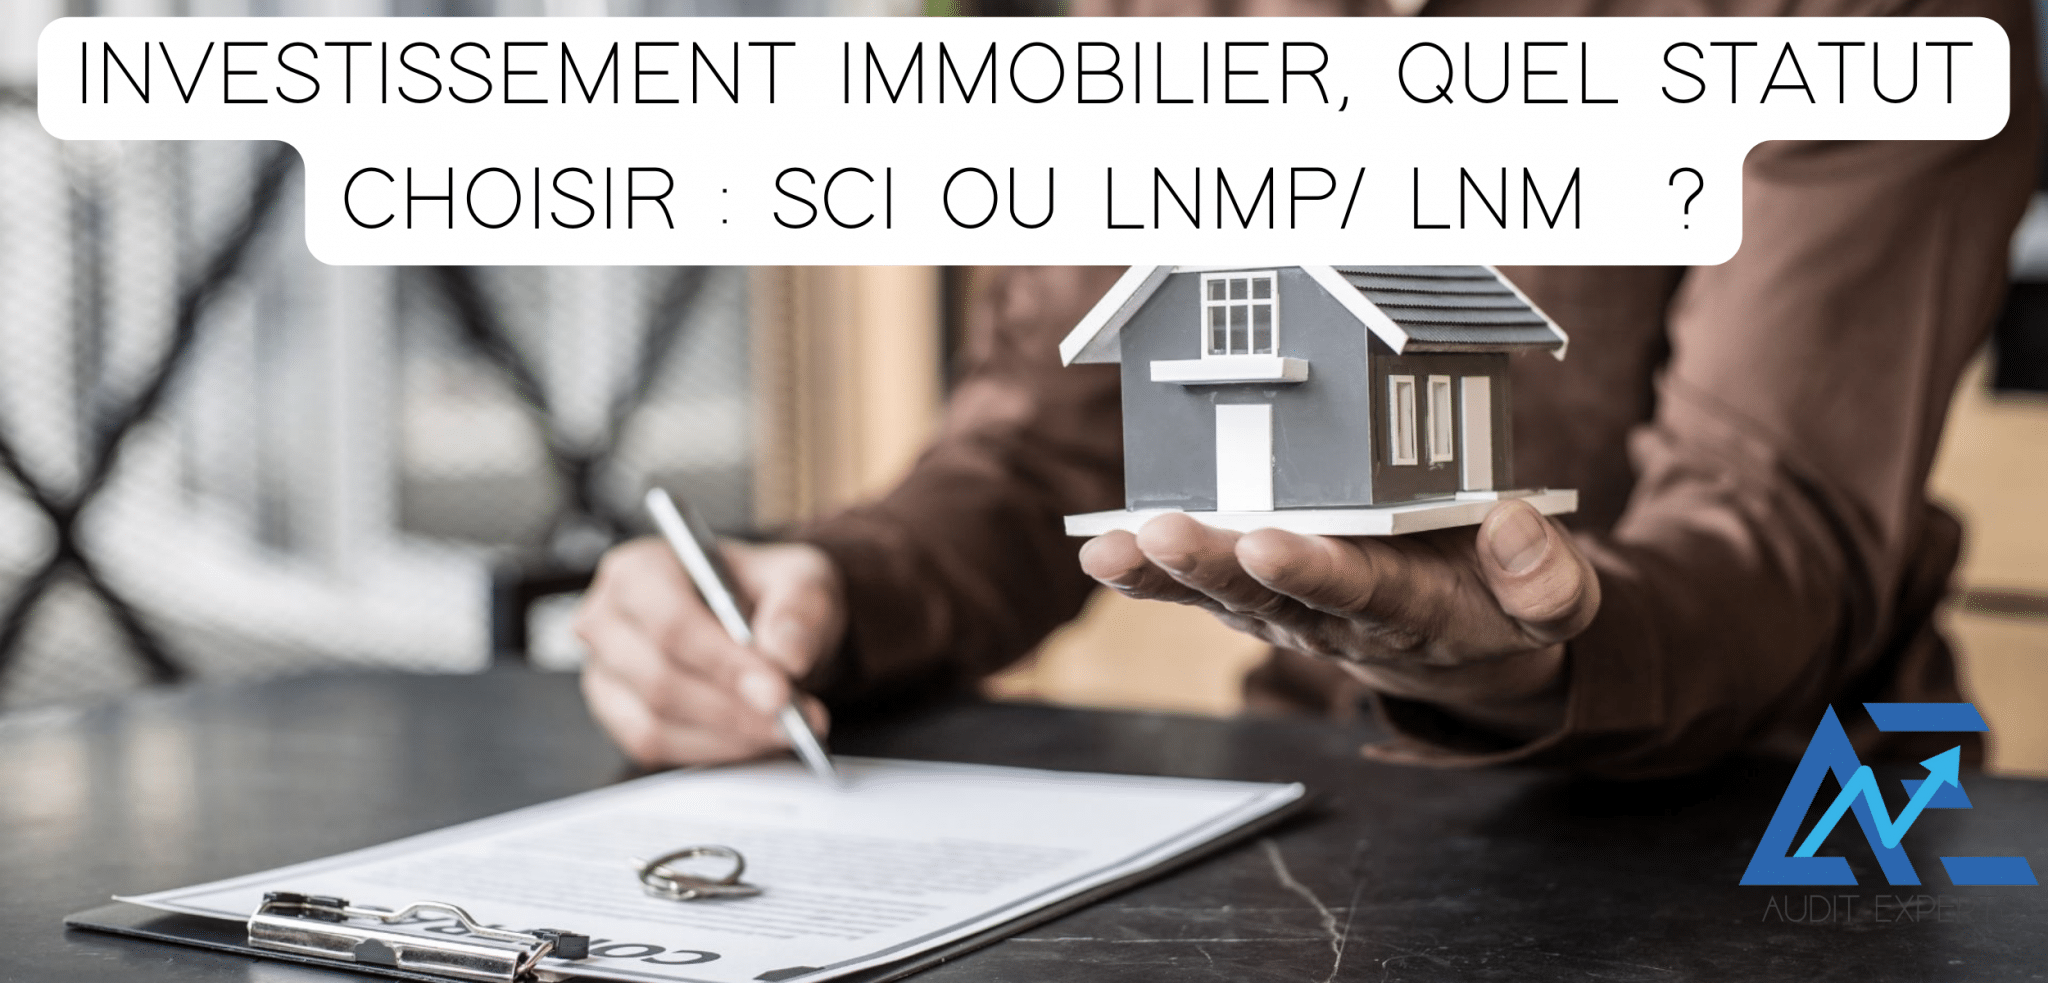 Lire la suite à propos de l’article L’investissement immobilier soit à travers le régime de la SCI soit celui de la LMNP.